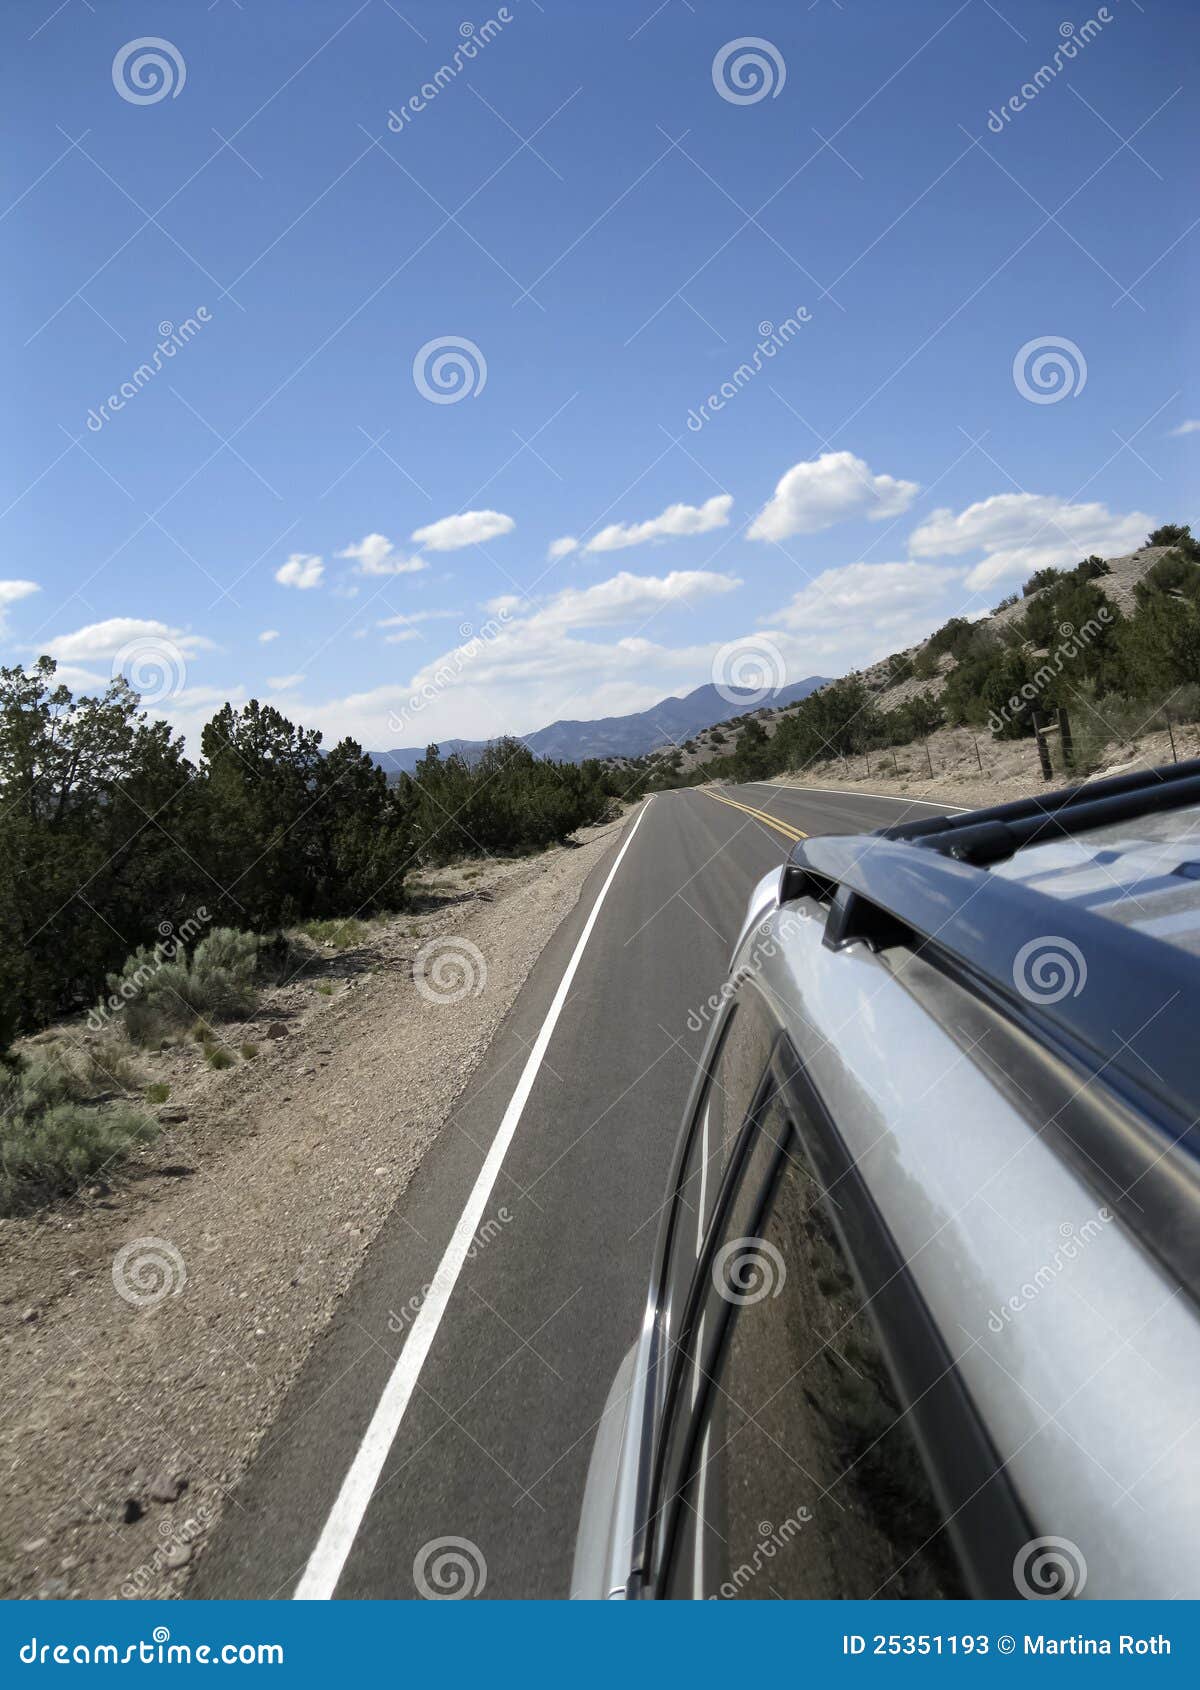 Viagem por estrada. Estrada pavimentada no deserto no ângulo oblíquo